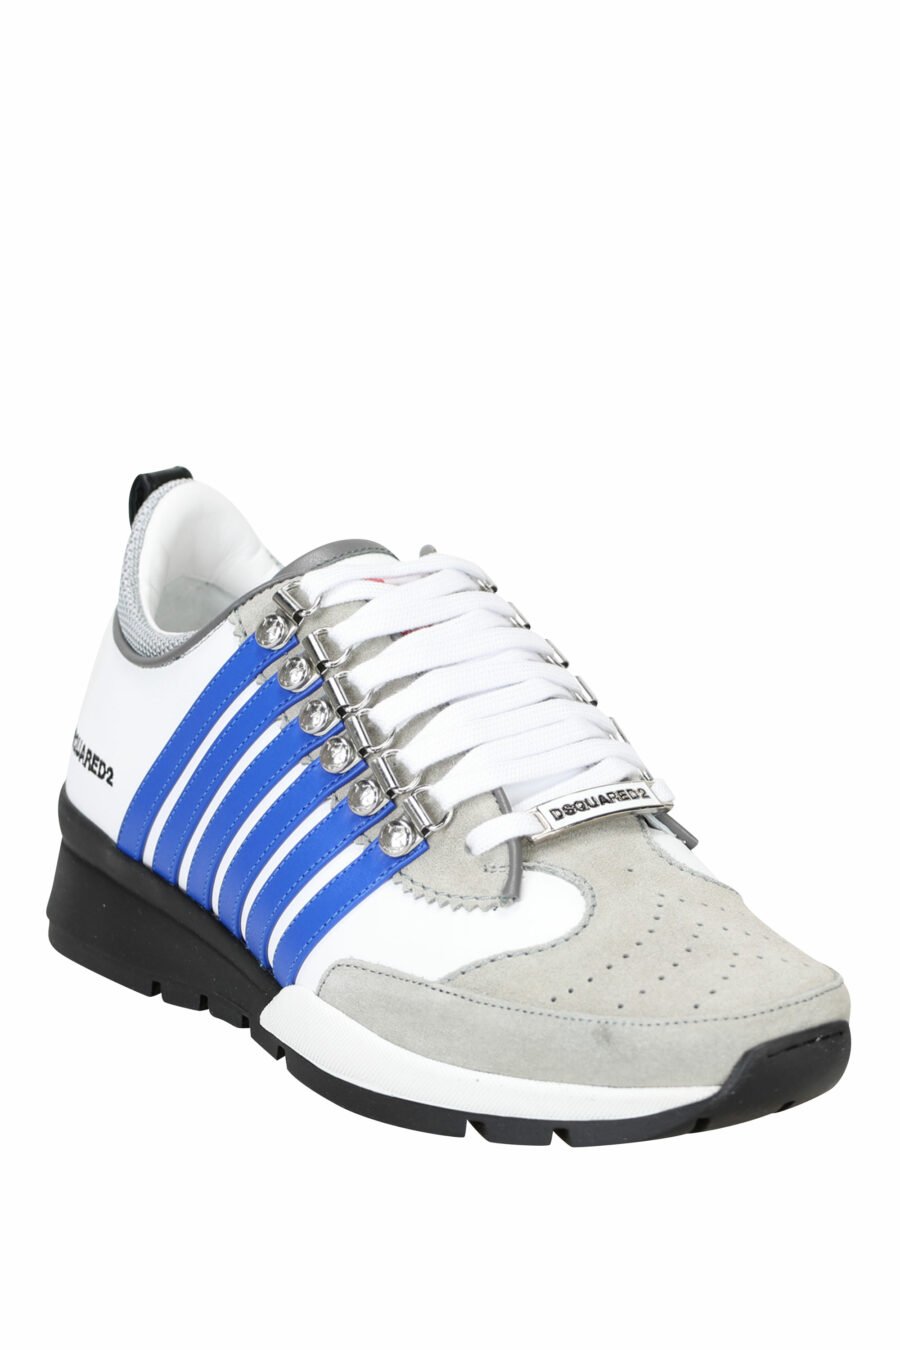 Zapatillas blancas con mix en gris, líneas azules y detalles en negro - 8055777244326